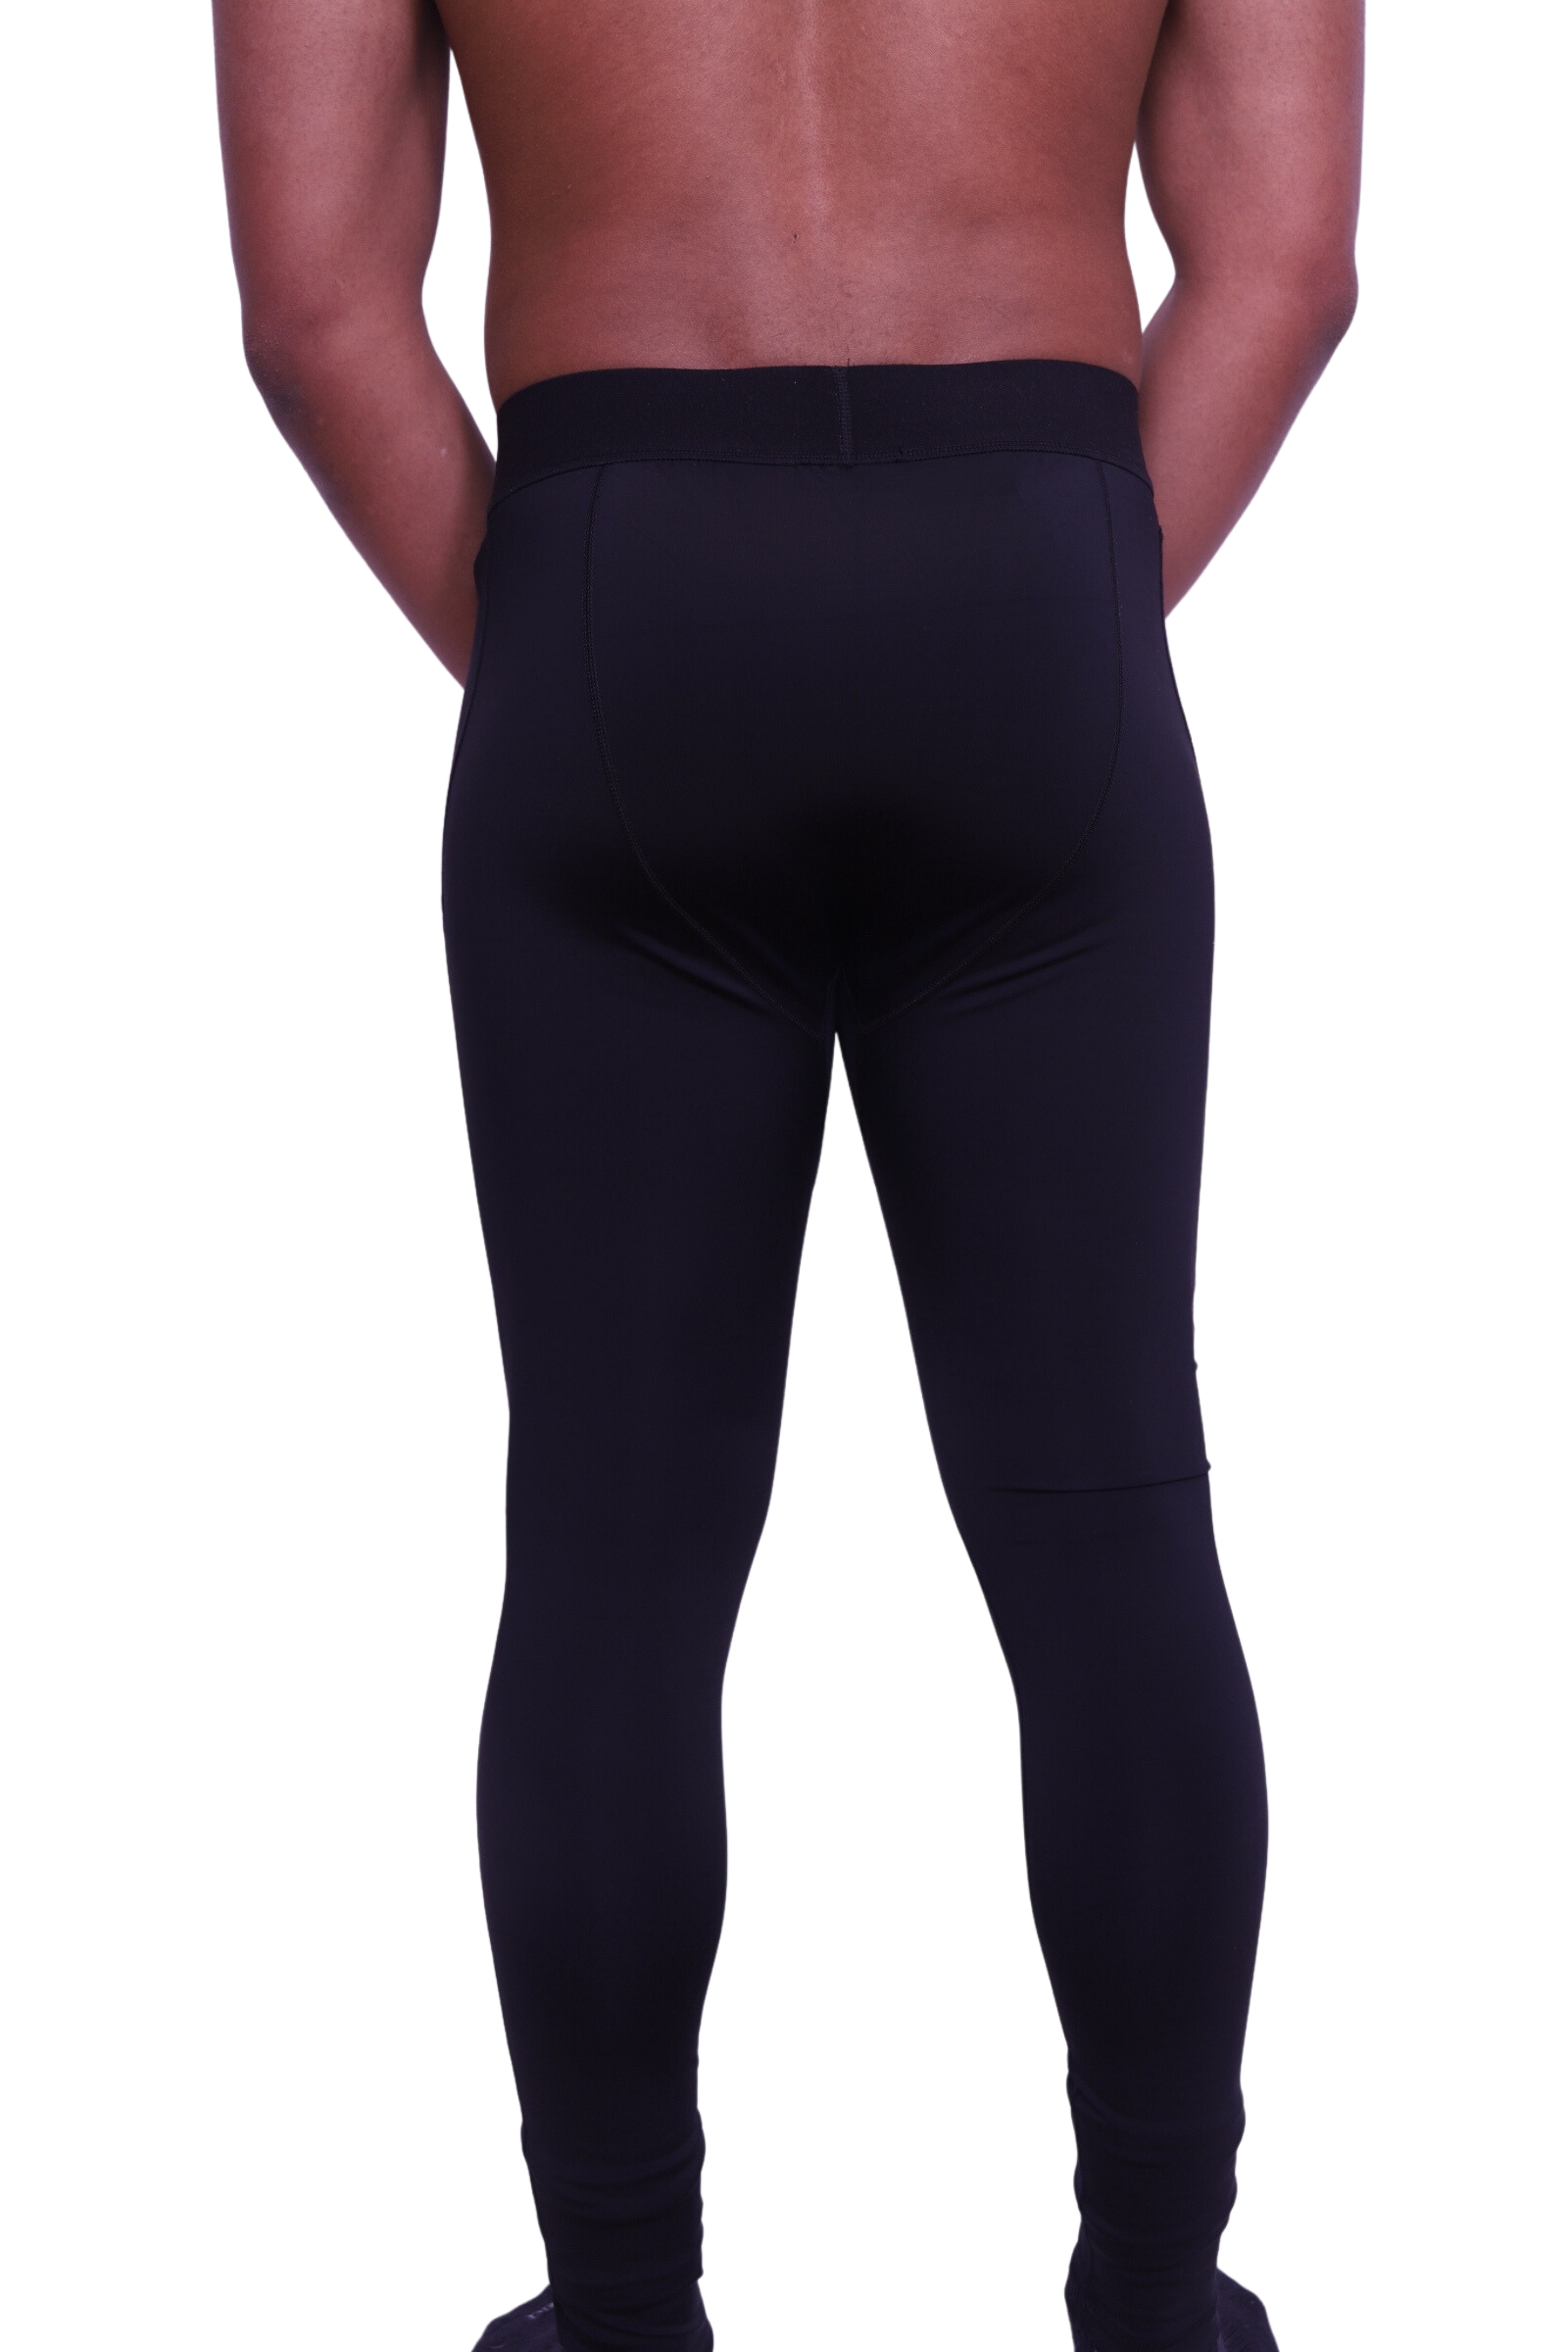 KYK Men's Polyester Spandex Compression Gym Workout Tights Base Layer Pants  Men, Women Compression Price in India - Buy KYK Men's Polyester Spandex  Compression Gym Workout Tights Base Layer Pants Men, Women